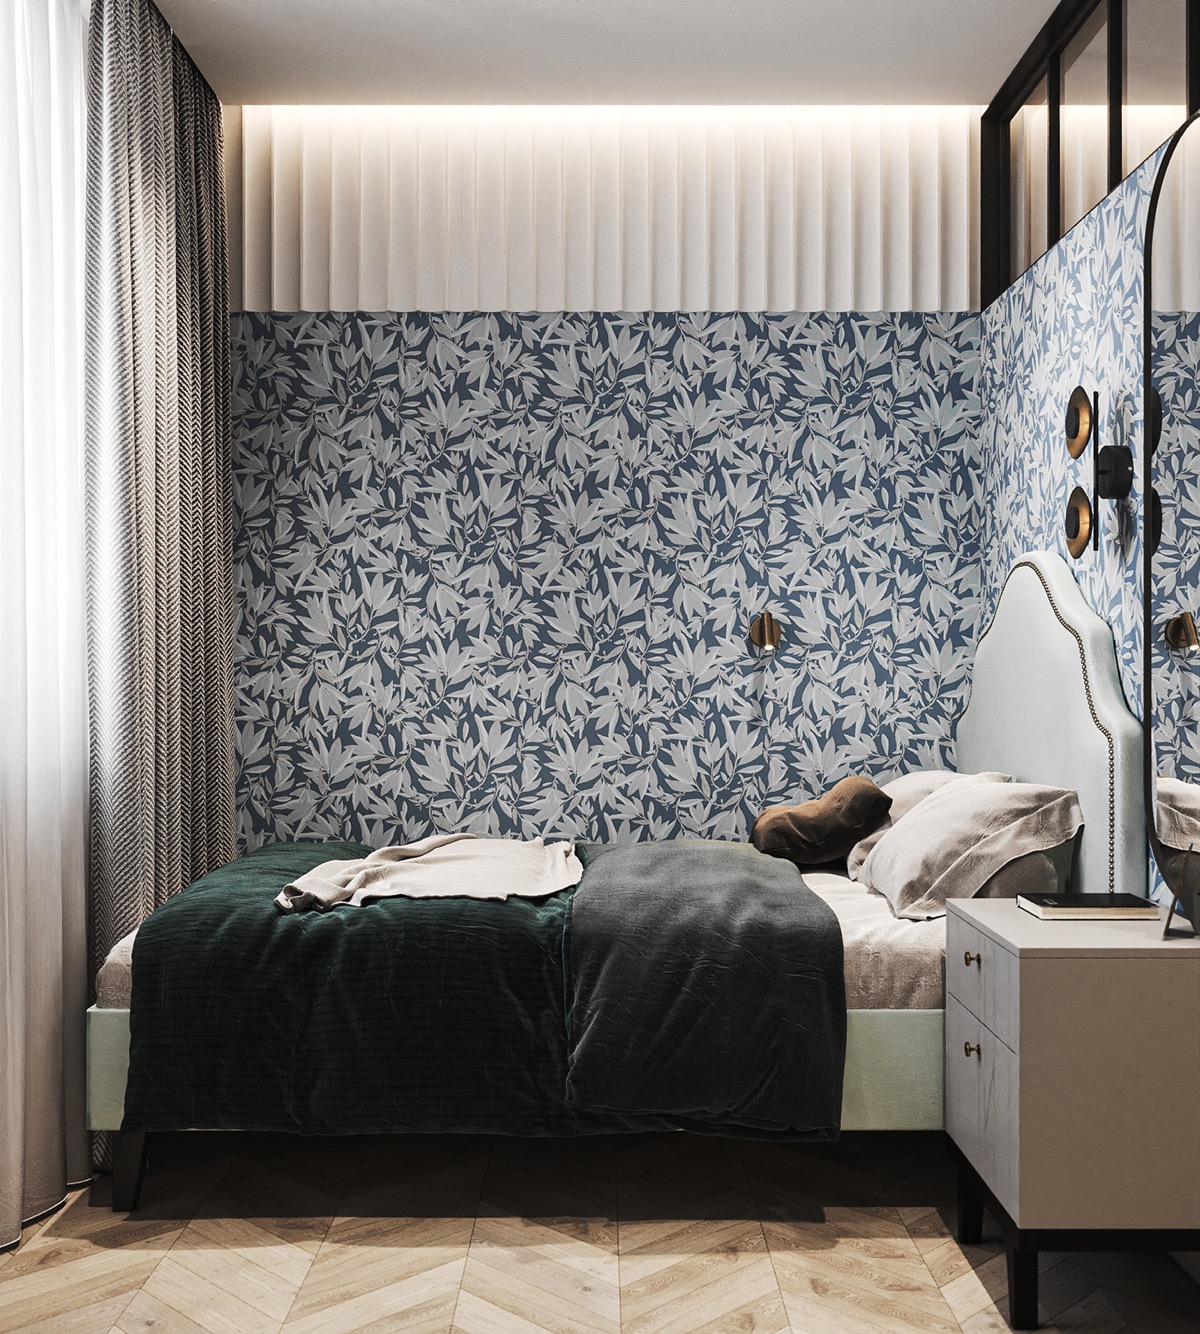 Giấy dán tường màu xanh có hoa văn dày đặc tạo phông nền nổi bật trong phòng ngủ.